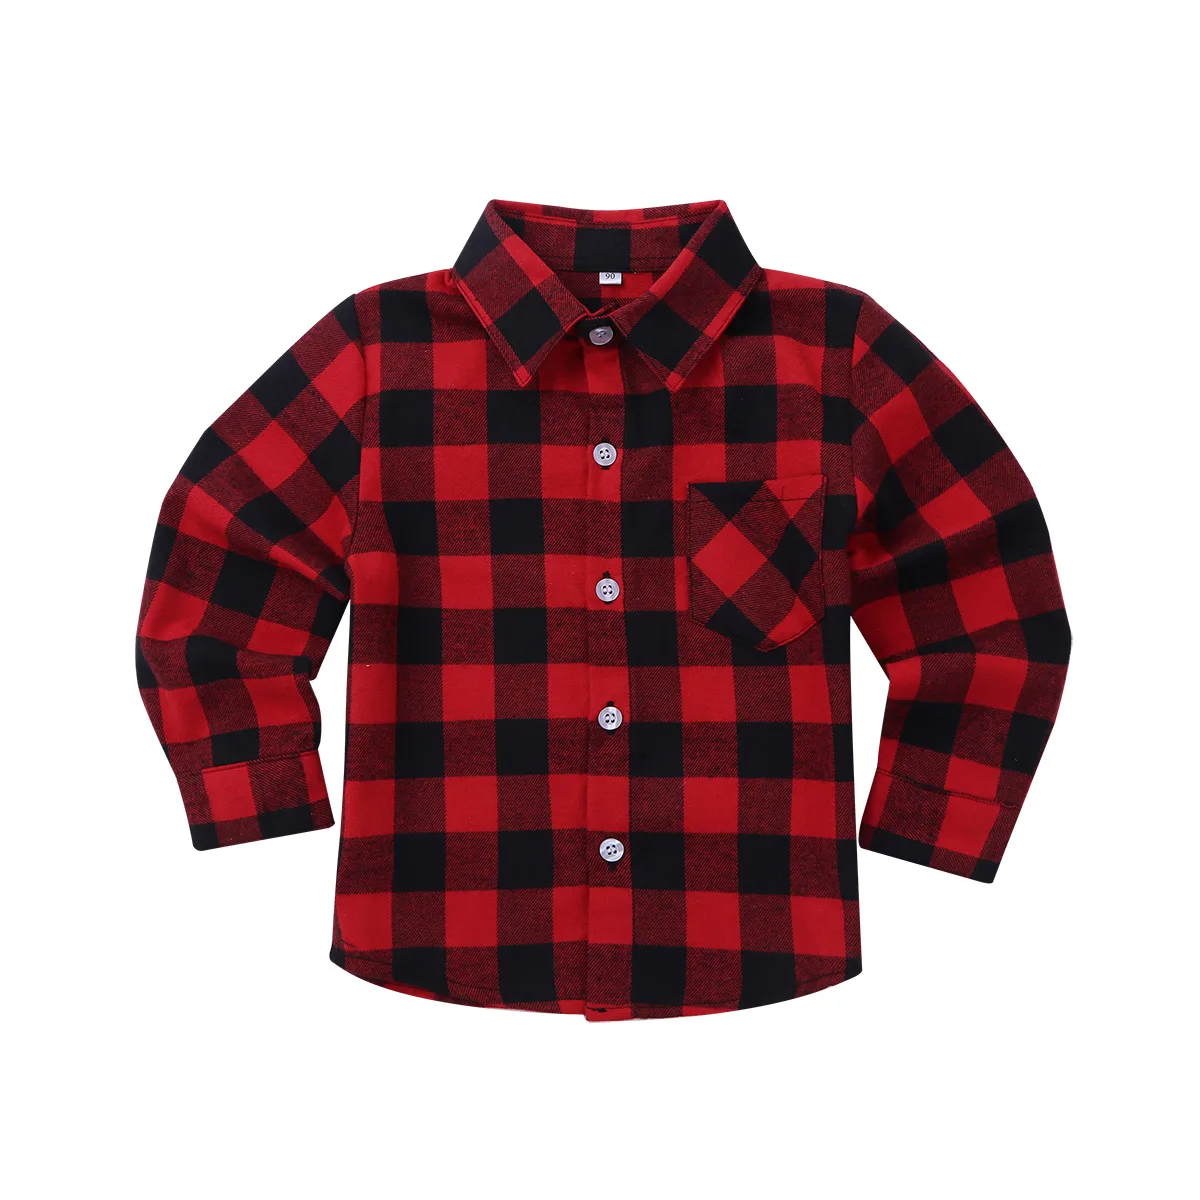 FEESHOW/ г. Новая клетчатая рубашка для маленьких детей Классическая Повседневная хлопковая рубашка с длинными рукавами для мальчиков и девочек трендовая детская одежда в английском стиле - Цвет: Red